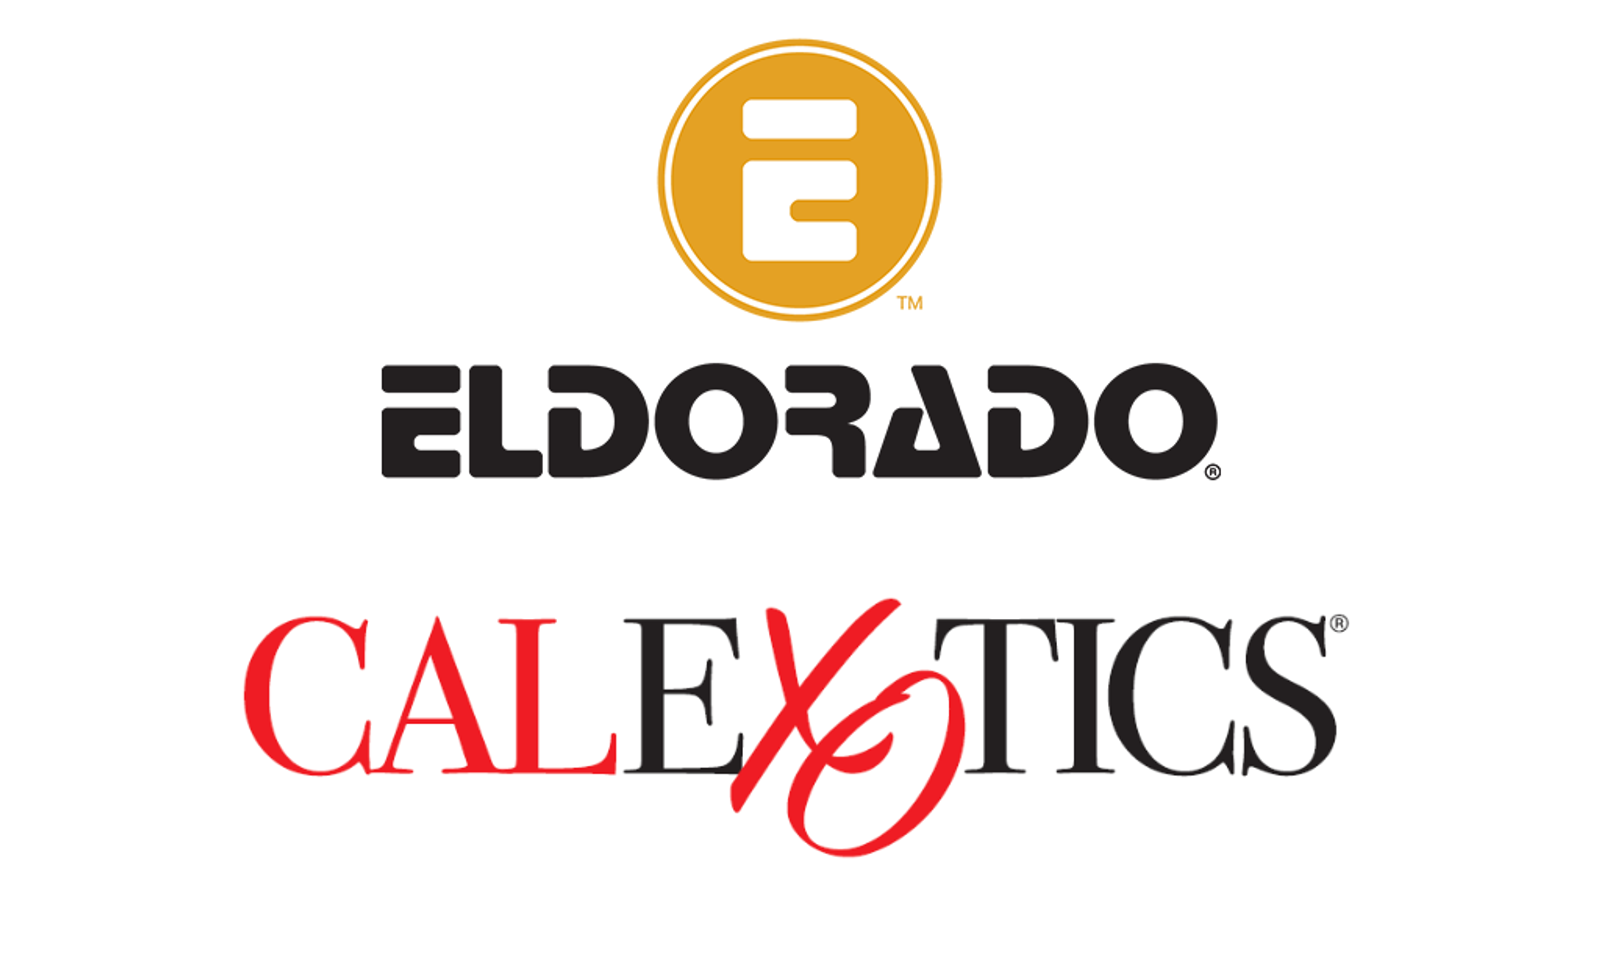 Eldorado Partners With CalExotics for Pair of Contests